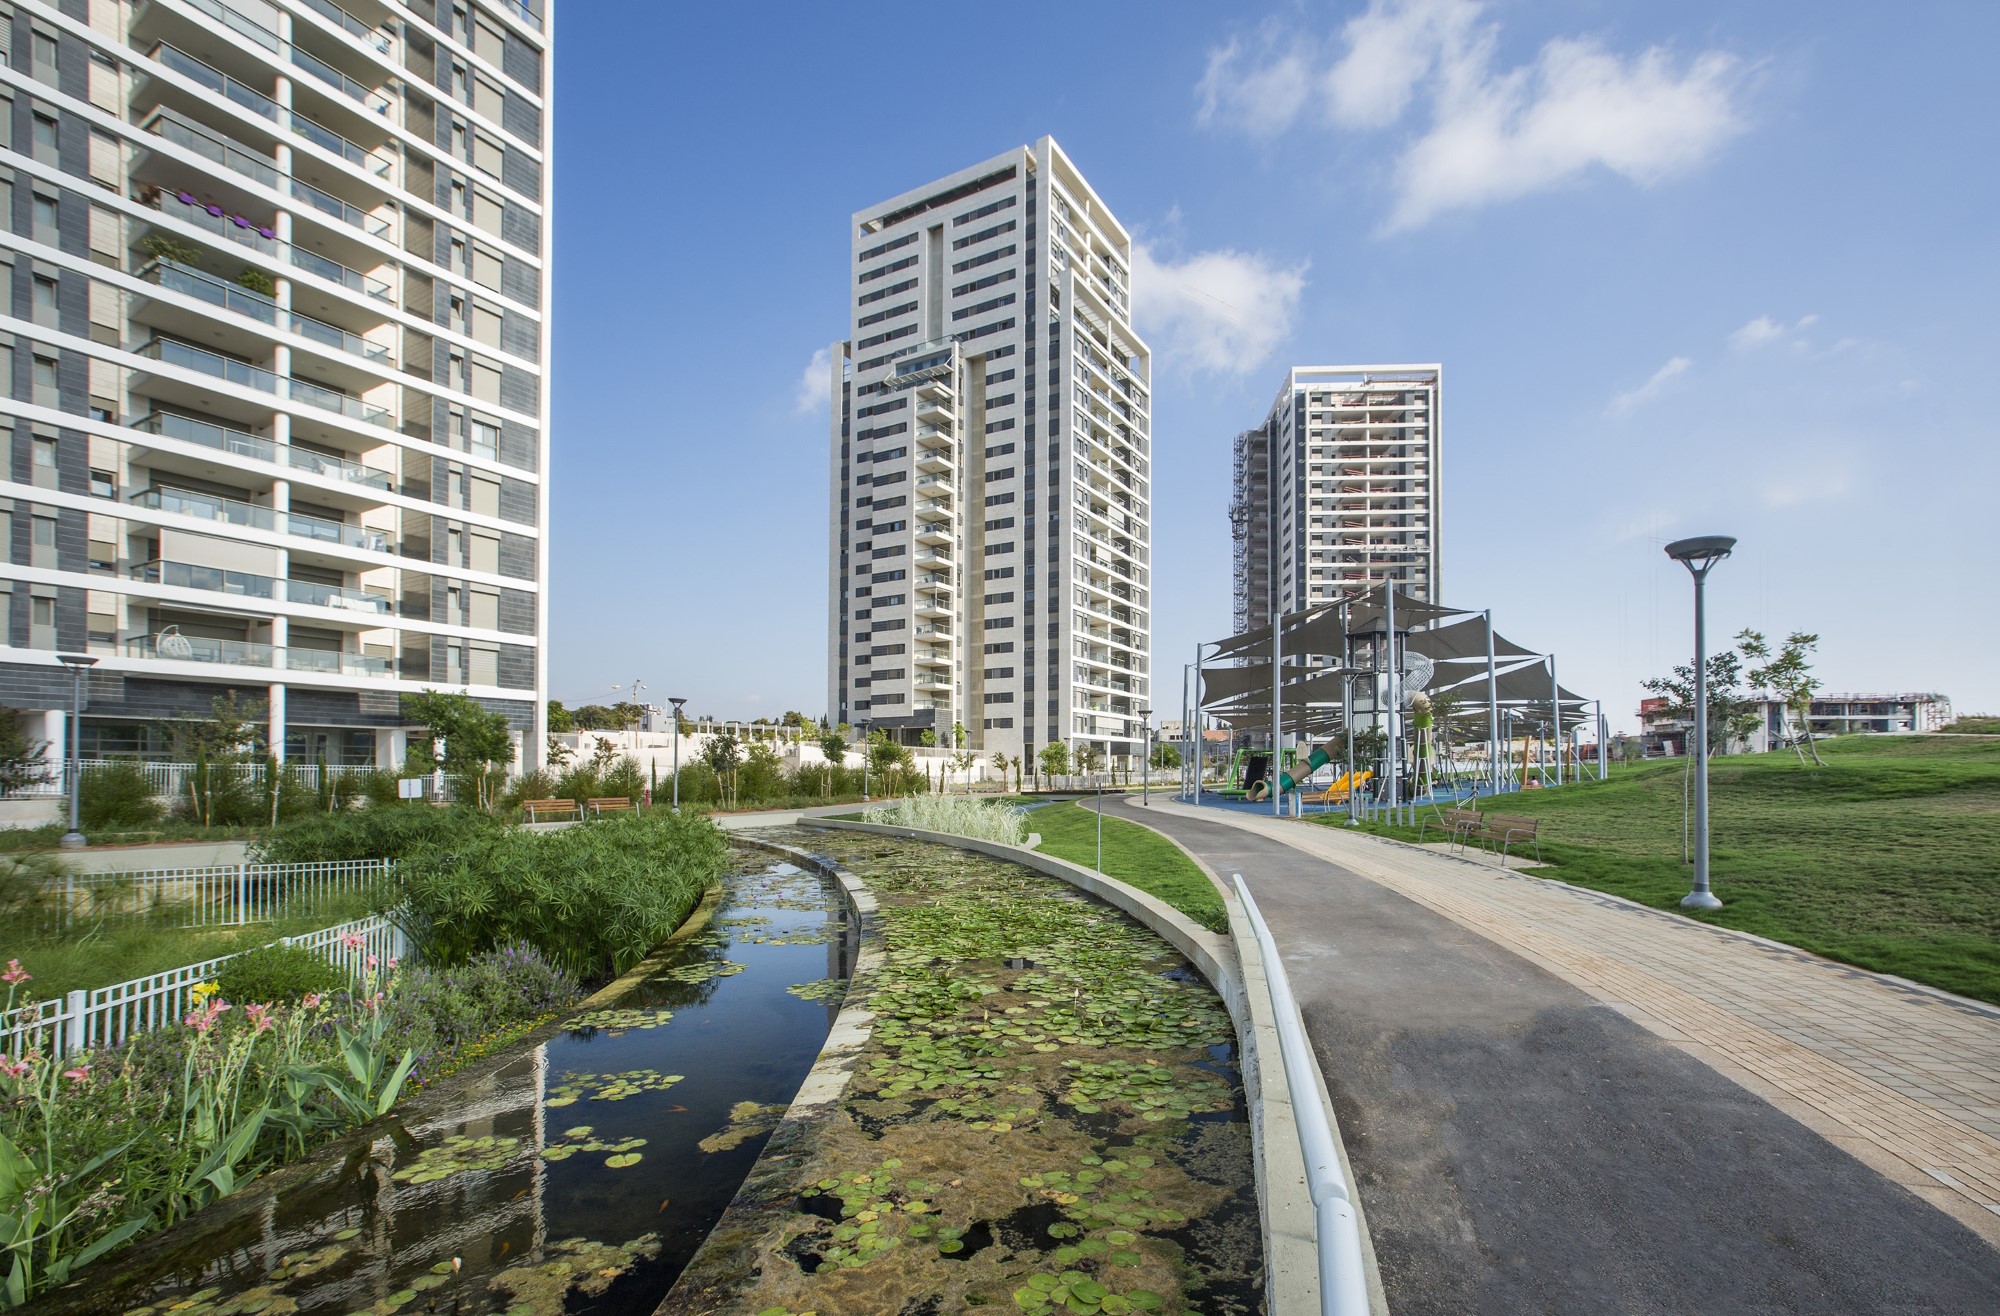 למ"ס: רמת גן נמצאת במקום הראשון במכירת דירות חדשות